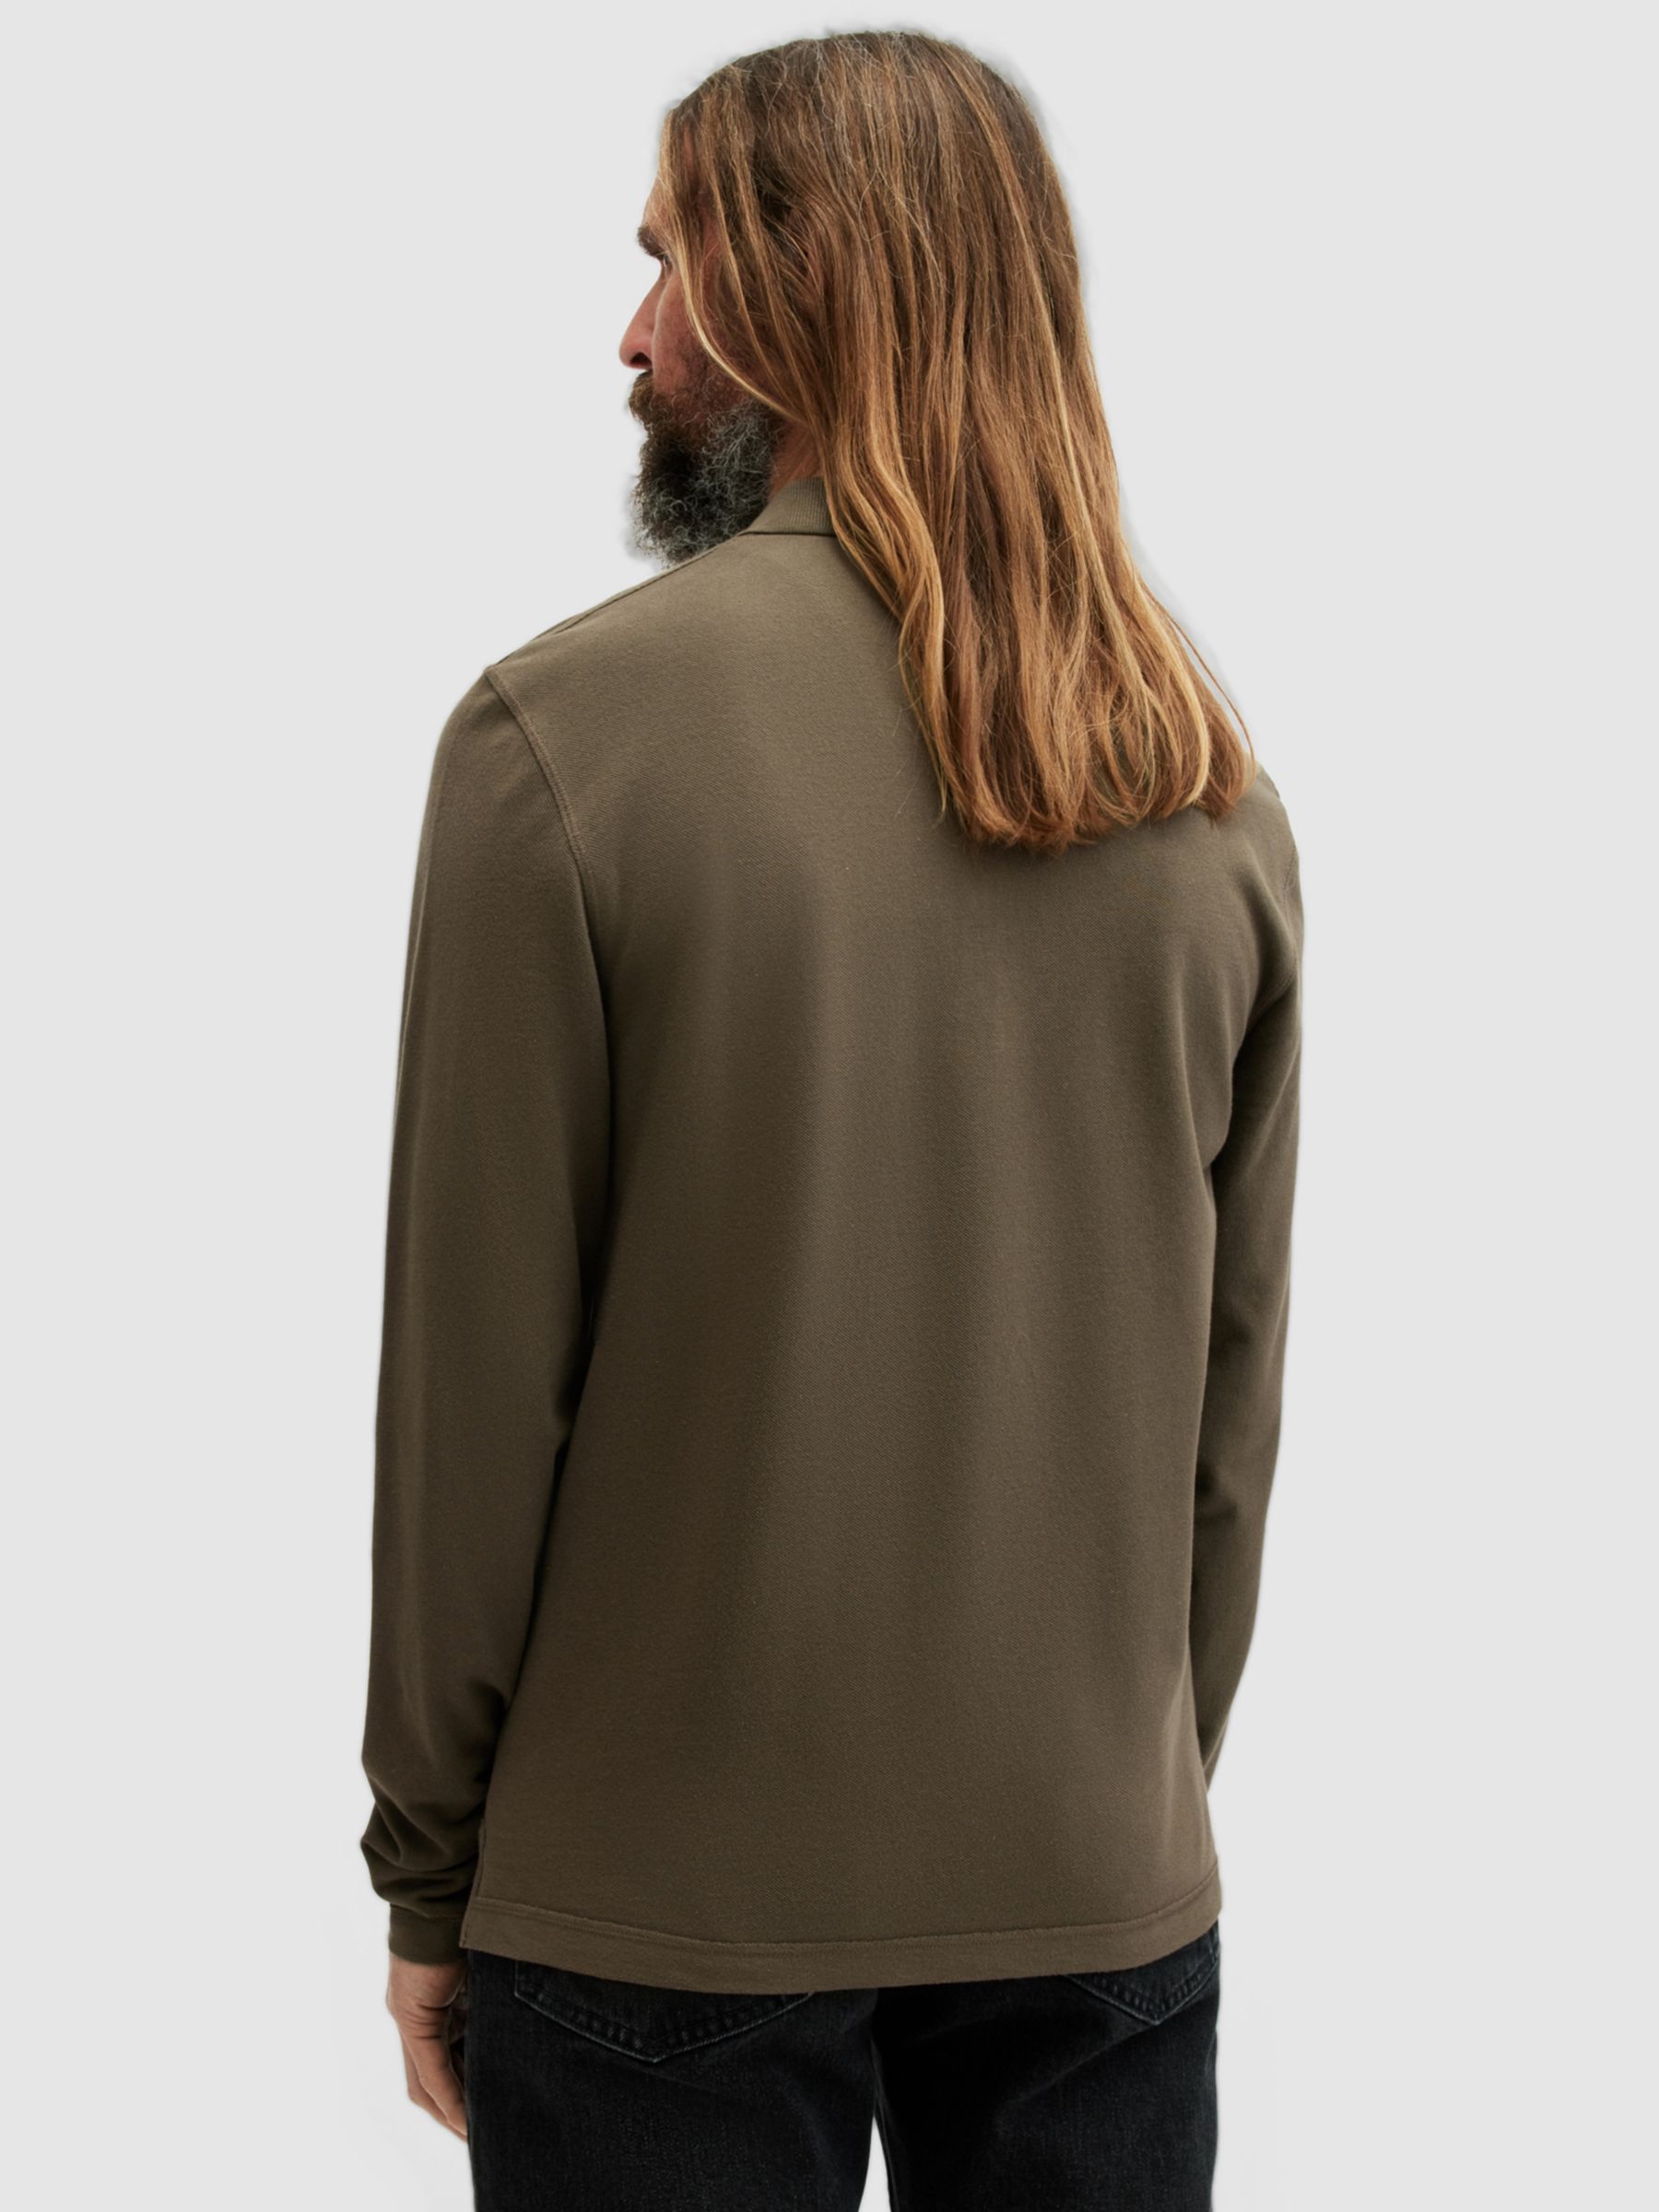 AllSaints Reform Organic Cotton Long Sleeve Polo Top, Ash Khaki Green, XS